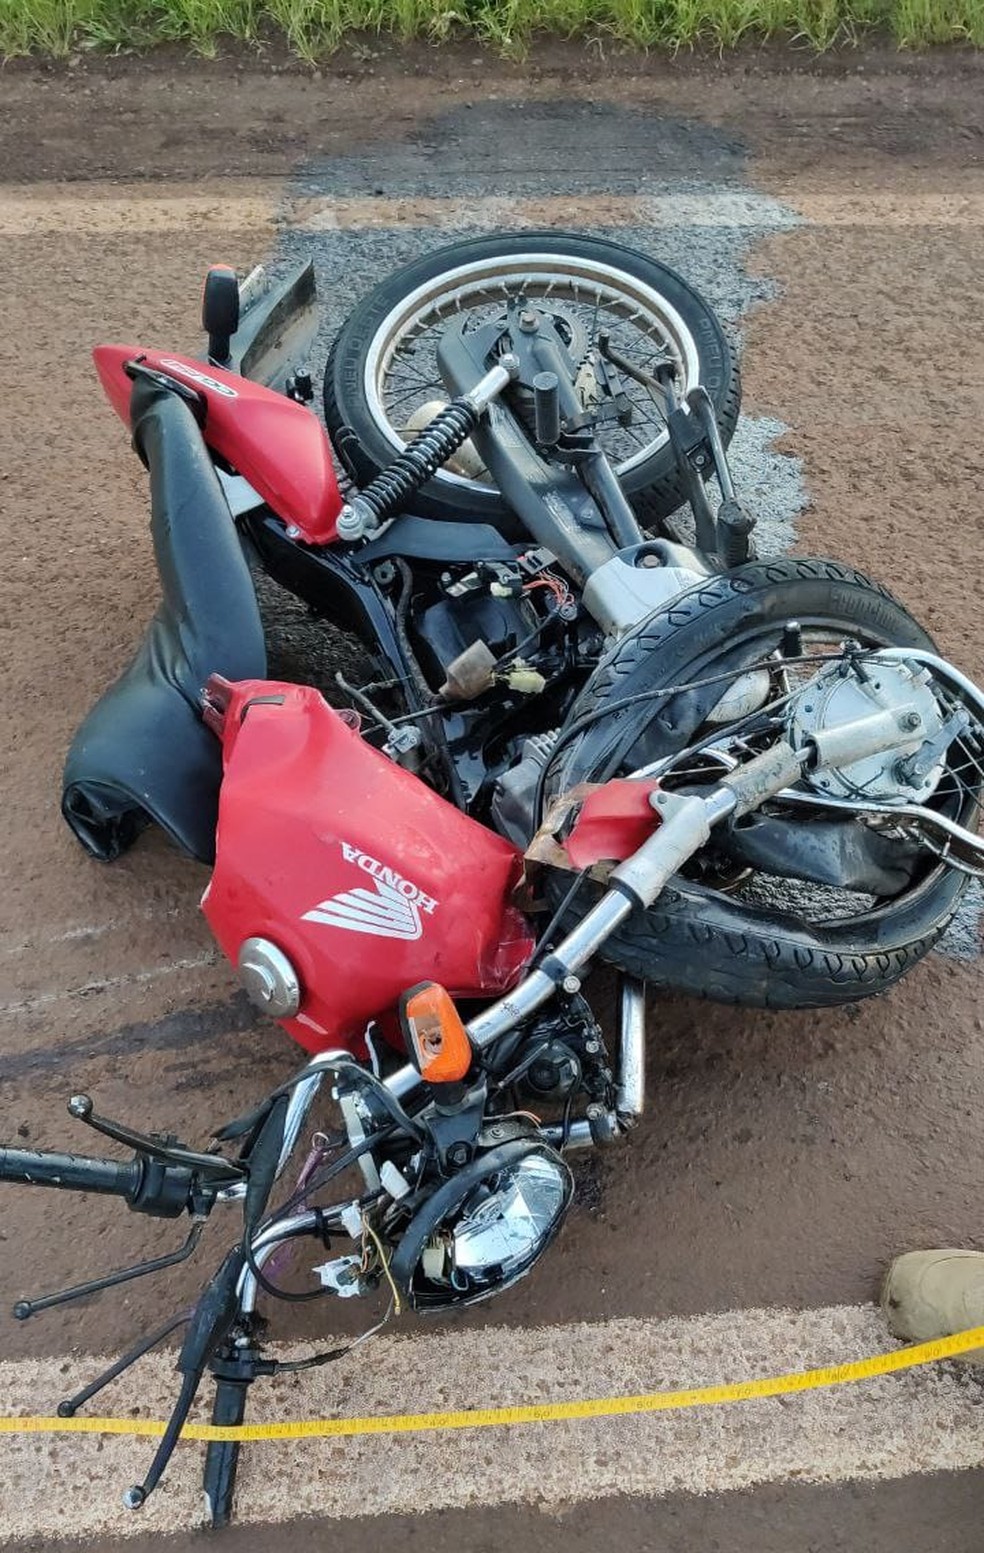 Motociclista que morreu em acidente na BR-369, em Cascavel, tinha 29 anos, de acordo com a polícia — Foto: Divulgação/ PRF